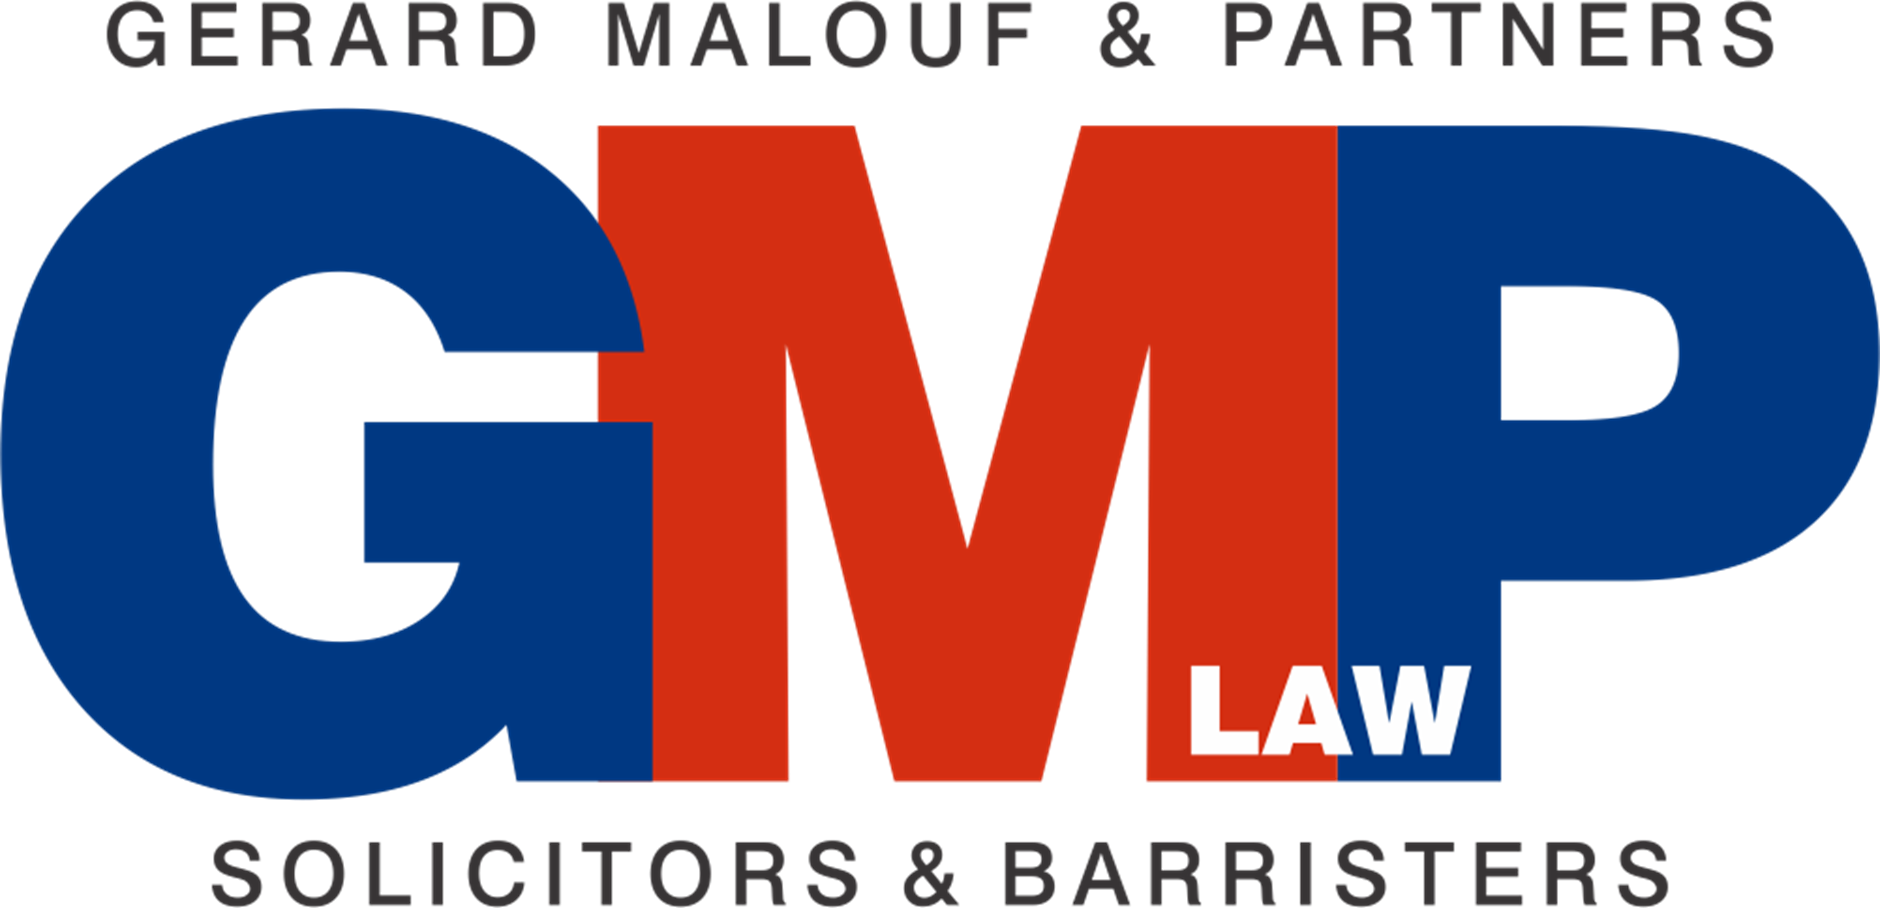 Gerard Malouf & Partners (GMP Law)